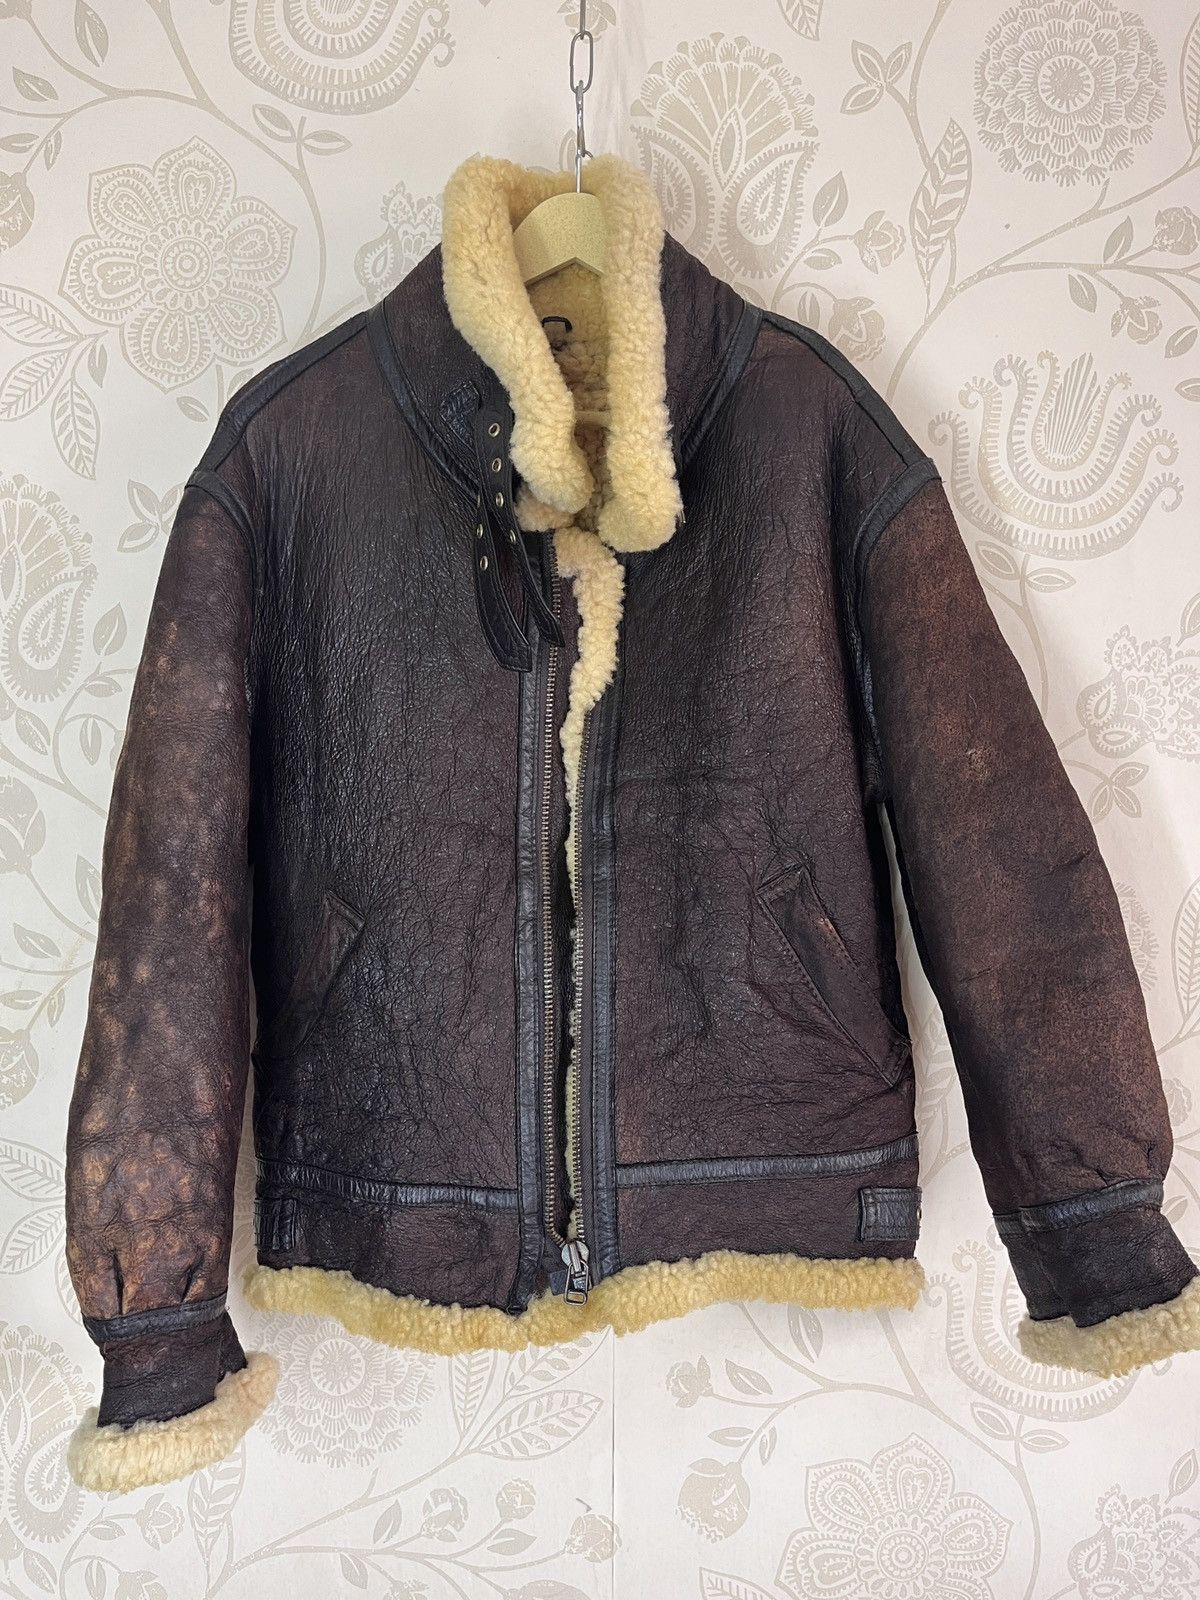 Vintage - Resident Evil B3 SheepSkin Leather Coat Jacket Japan - 19